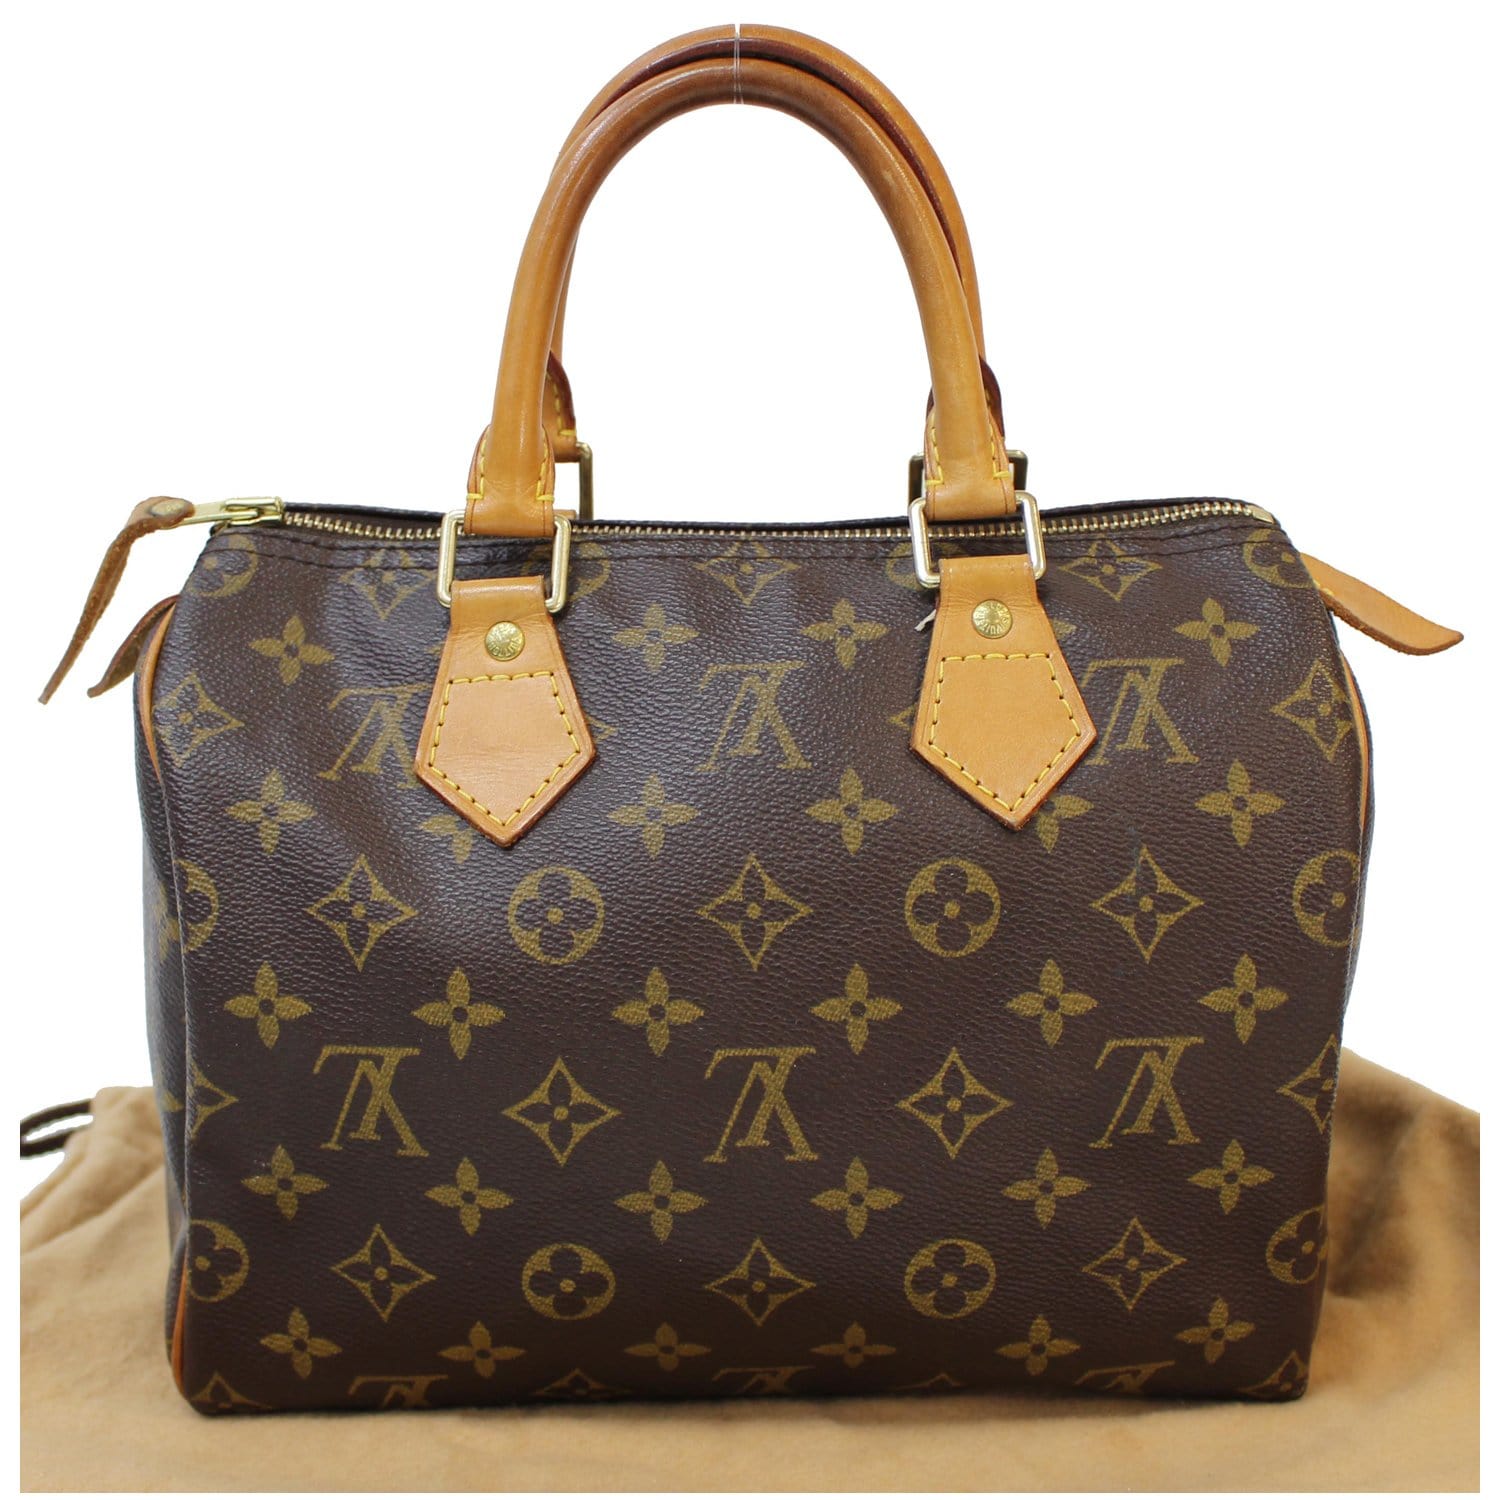 Vuitton Speedy Bag  Bags, Satchel bags, Vuitton